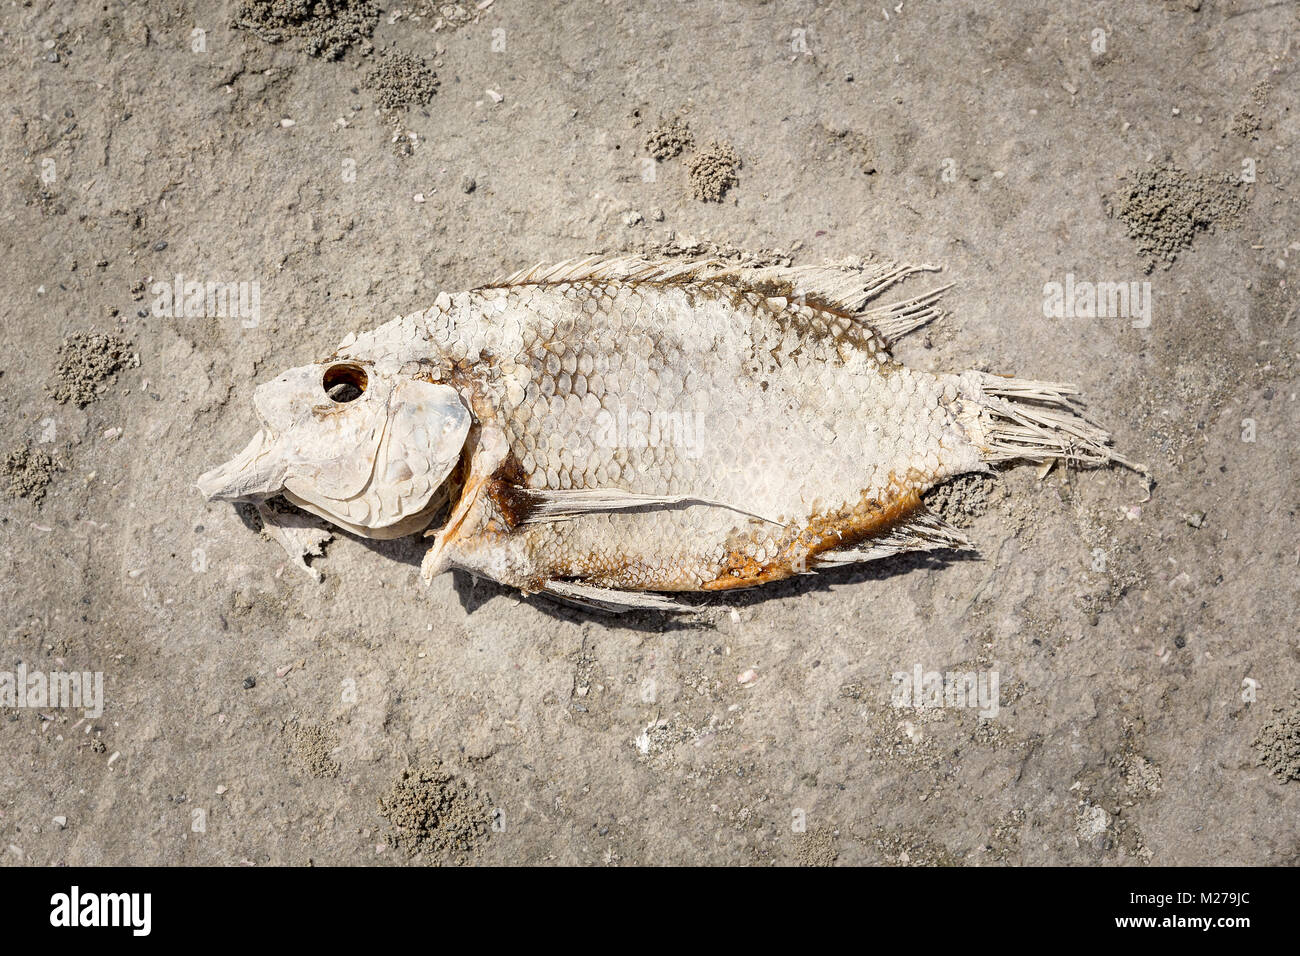 Dead Fish at the Salton Sea Stock Photo